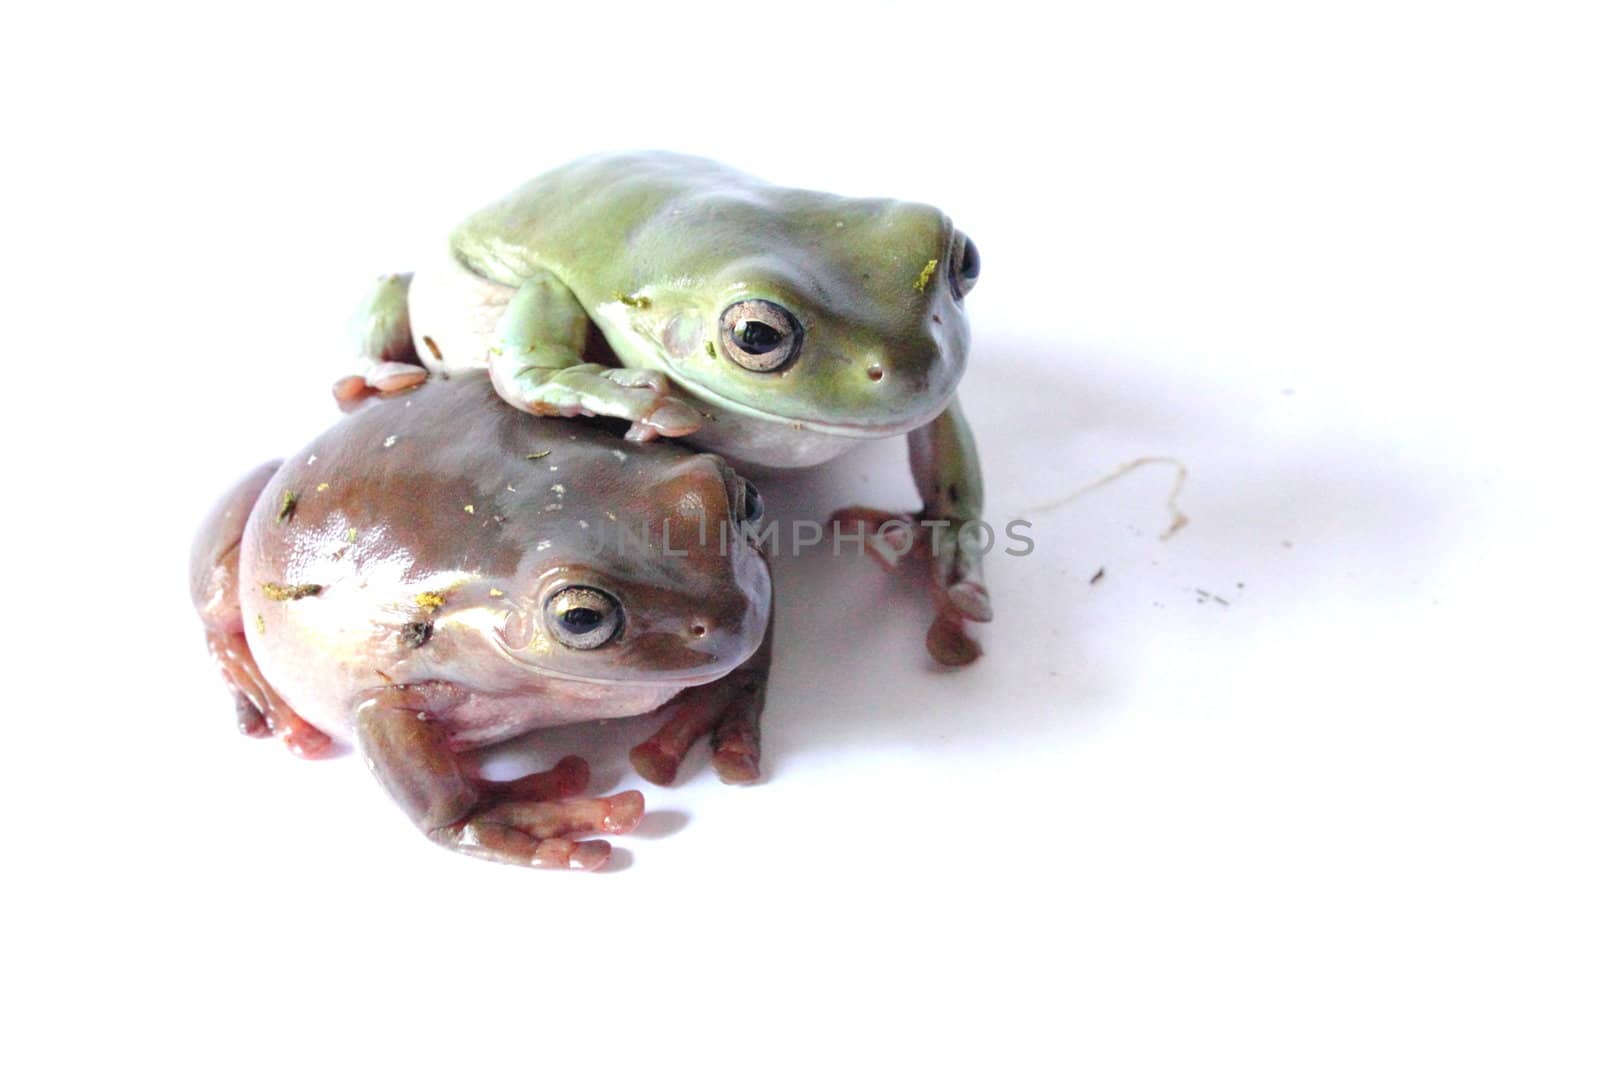 Australian Tree Frogs by abhbah05